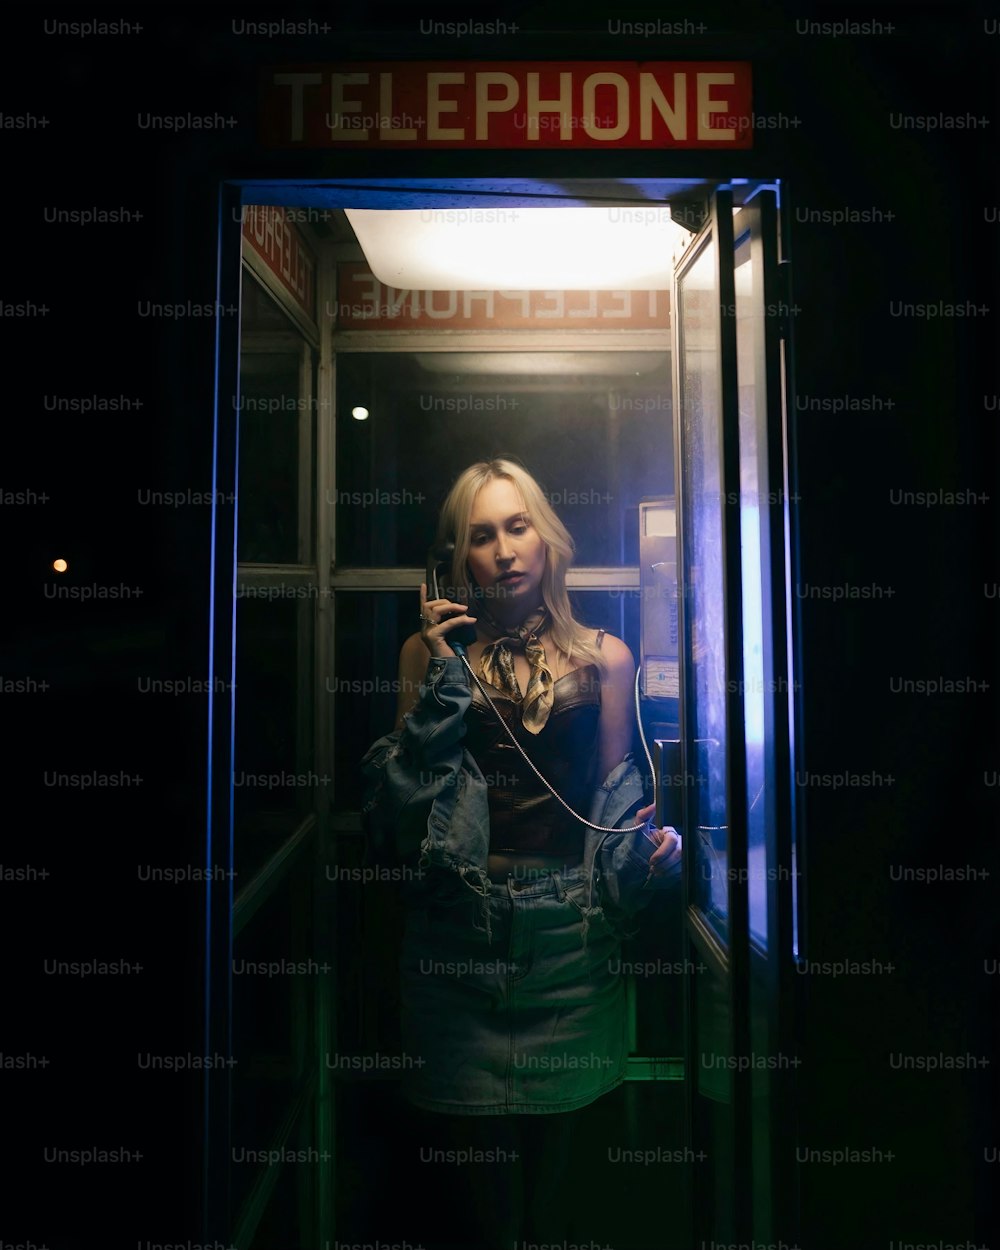 Une femme se tient dans une cabine téléphonique